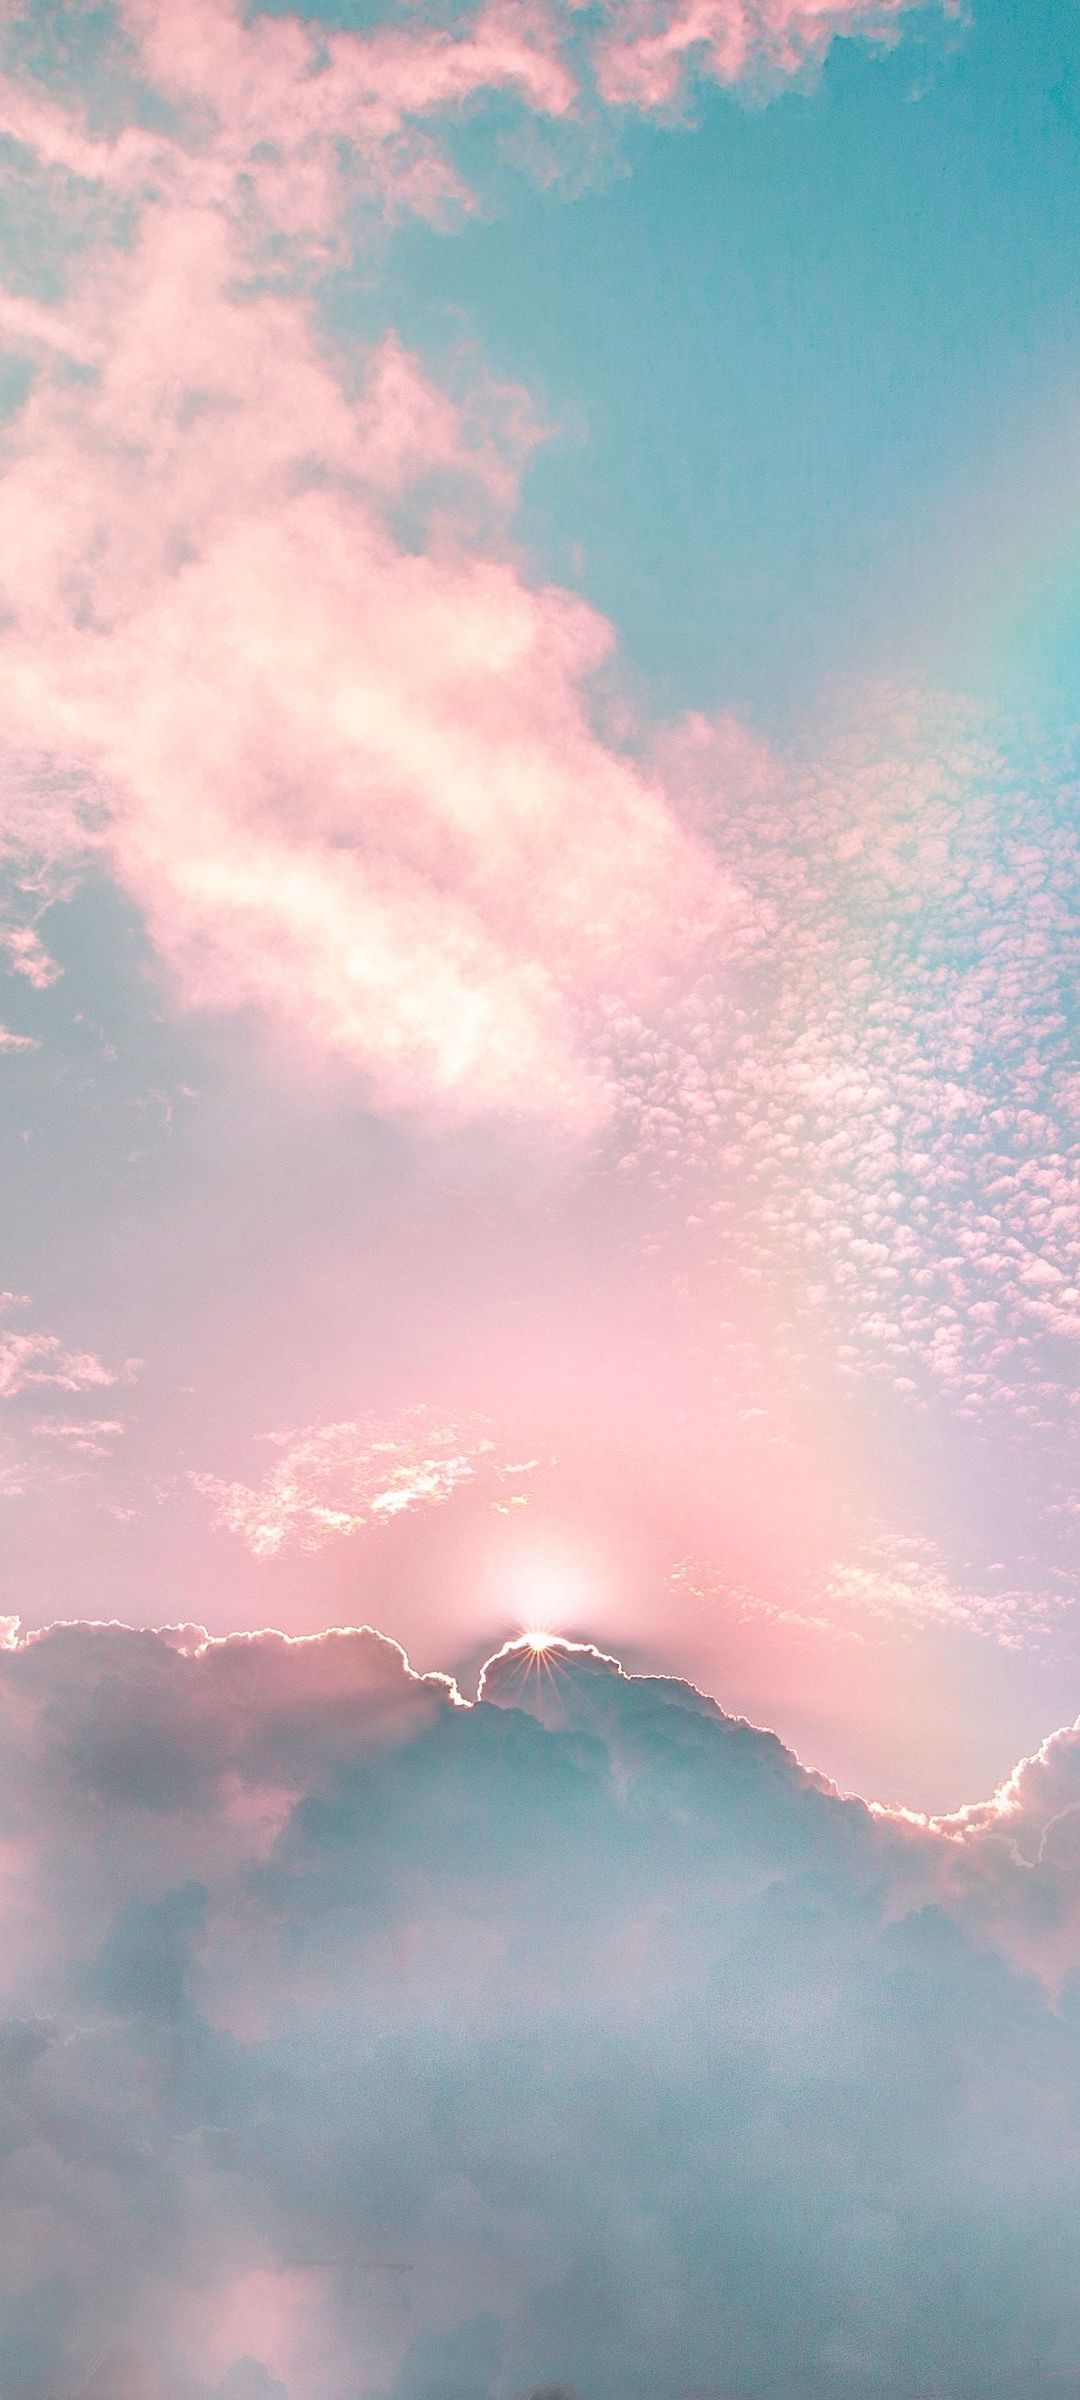 綺麗な空 虹 雲 Galaxy S21 5g Androidスマホ壁紙 待ち受け スマラン